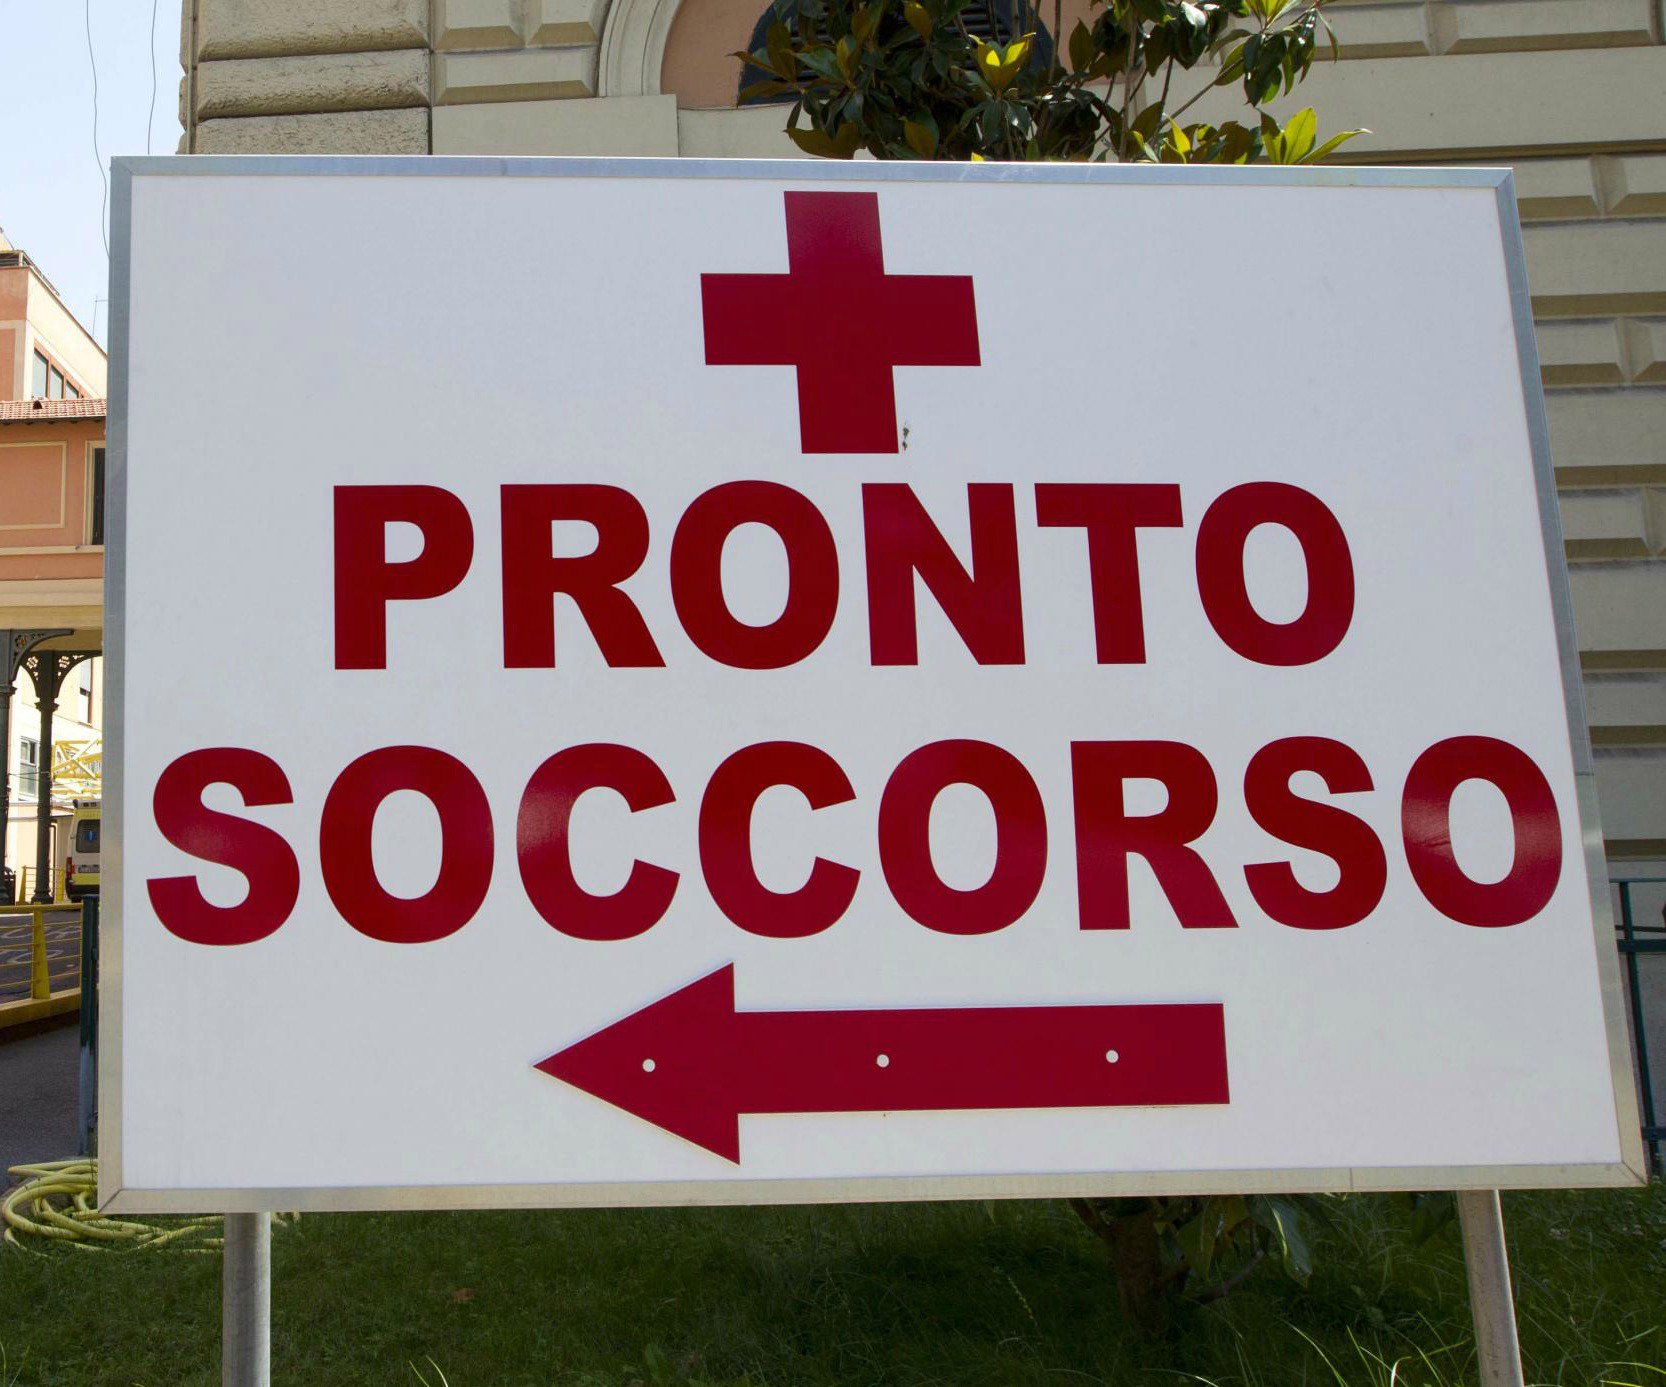 Morta dopo asportazione neo: santone e medico condannati Genova